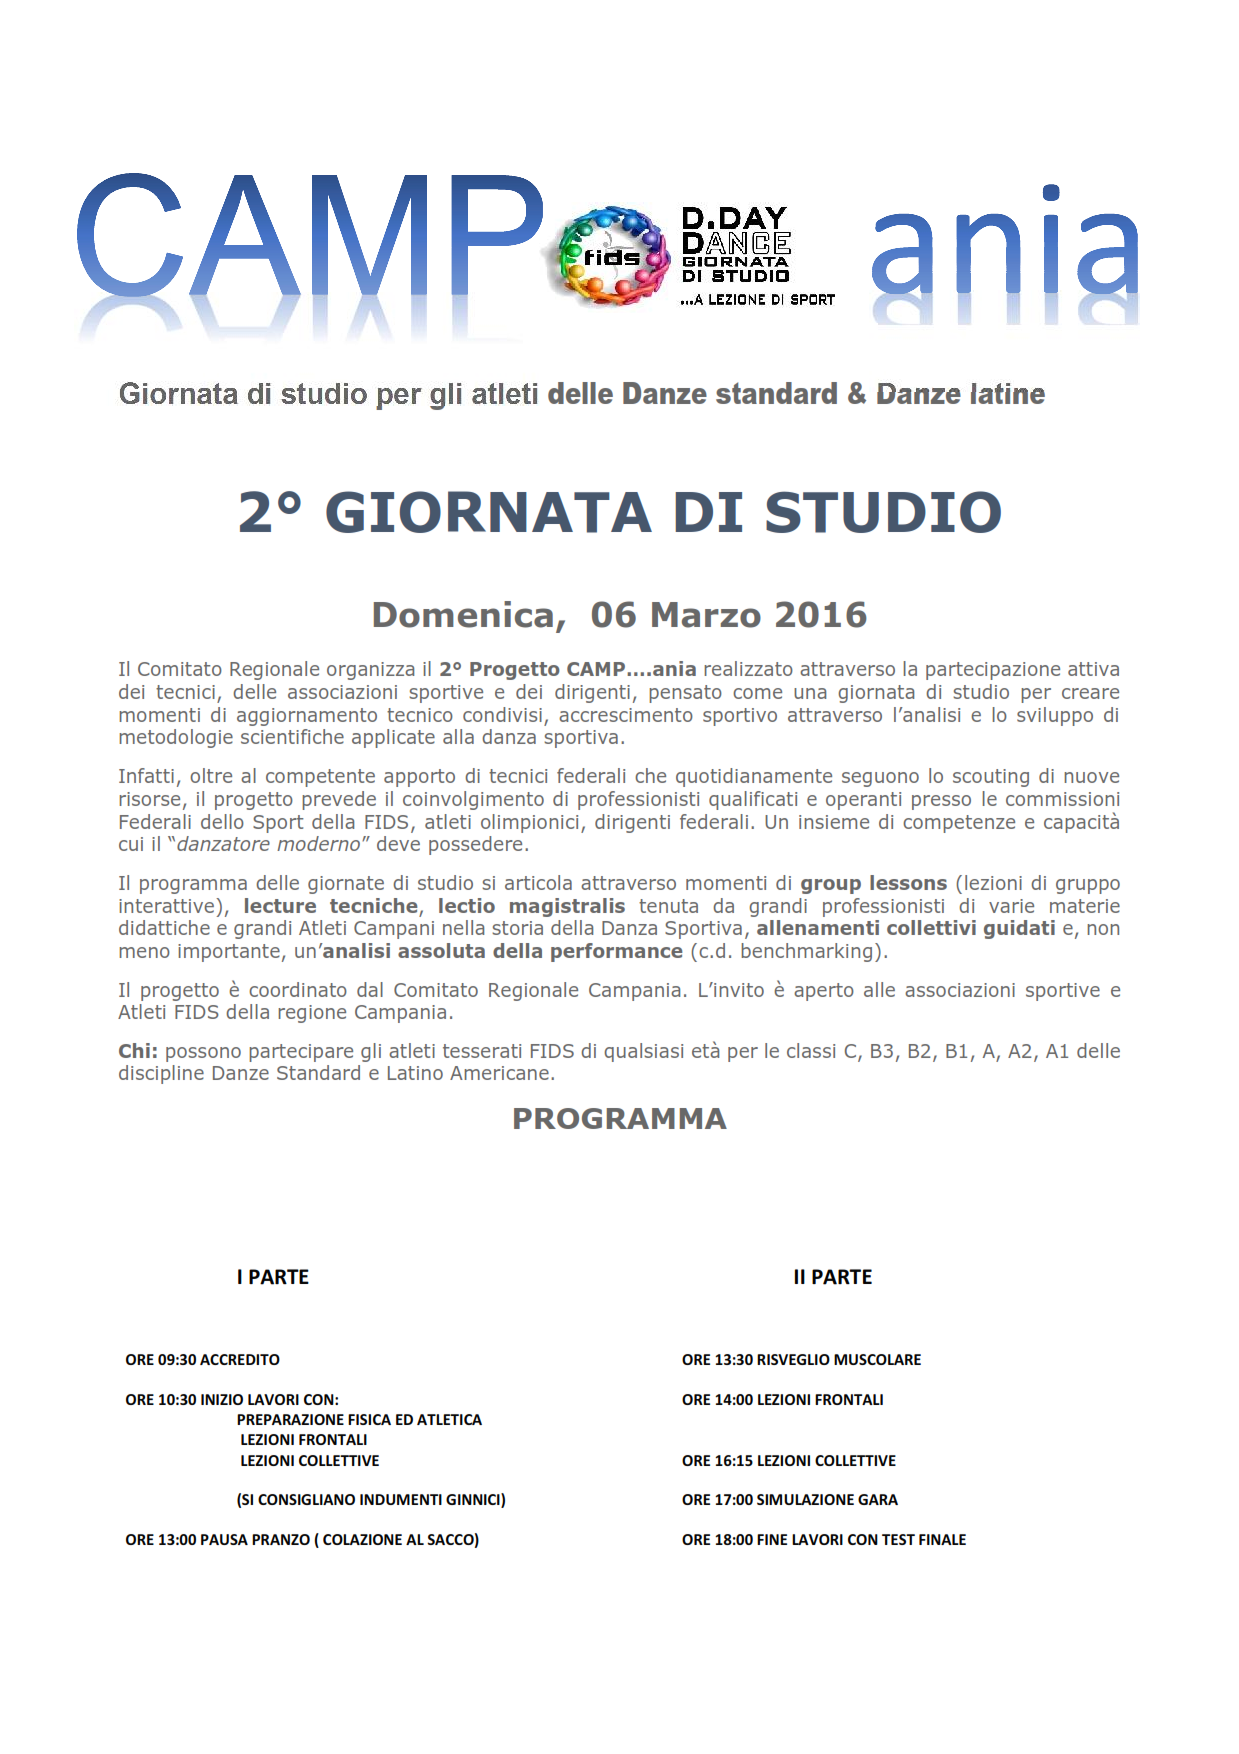 2 GIORNATA DI FORMAZIONE E STUDIO 6 dicembre 2015_001